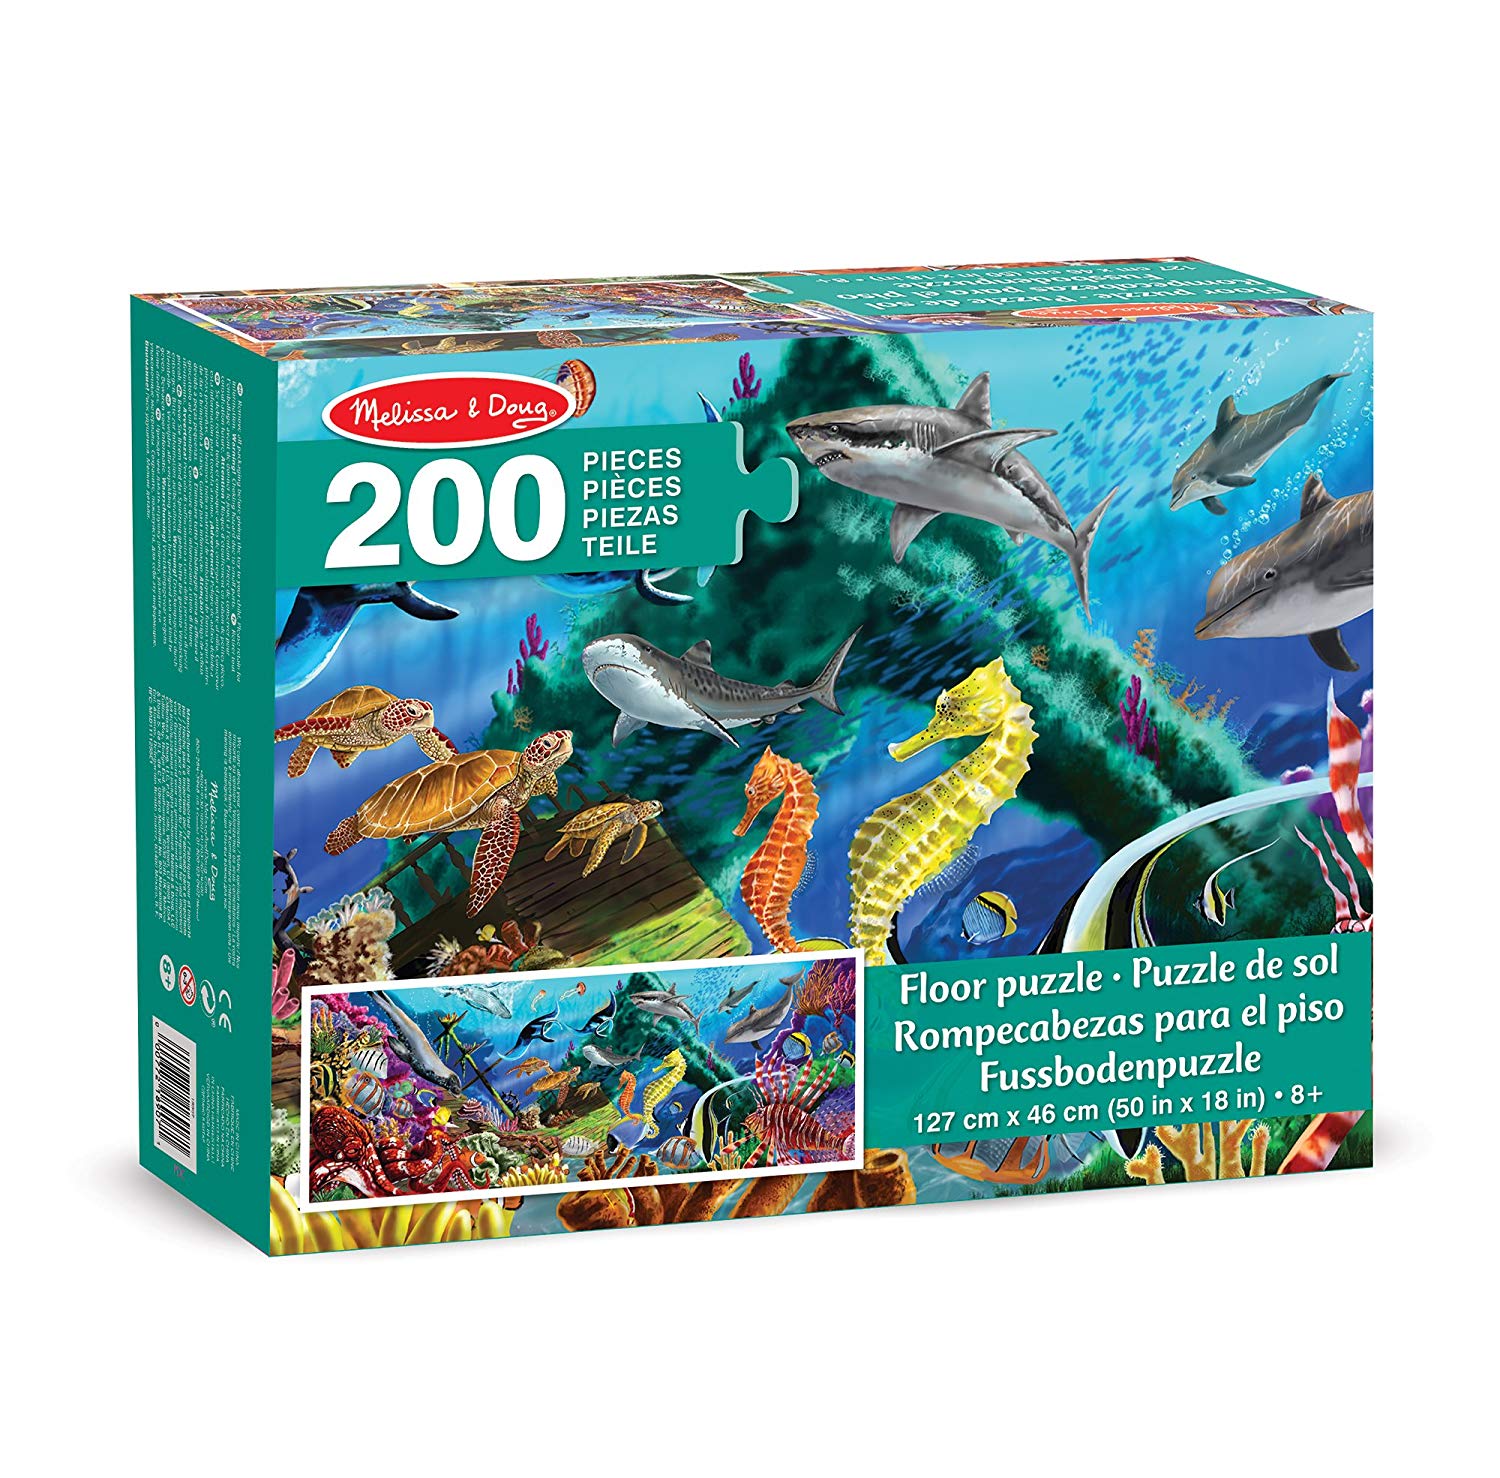 Melissa & Doug 18907 Unter Wasser Oase Jumbo Floor Puzzle 200 Pieces – Over